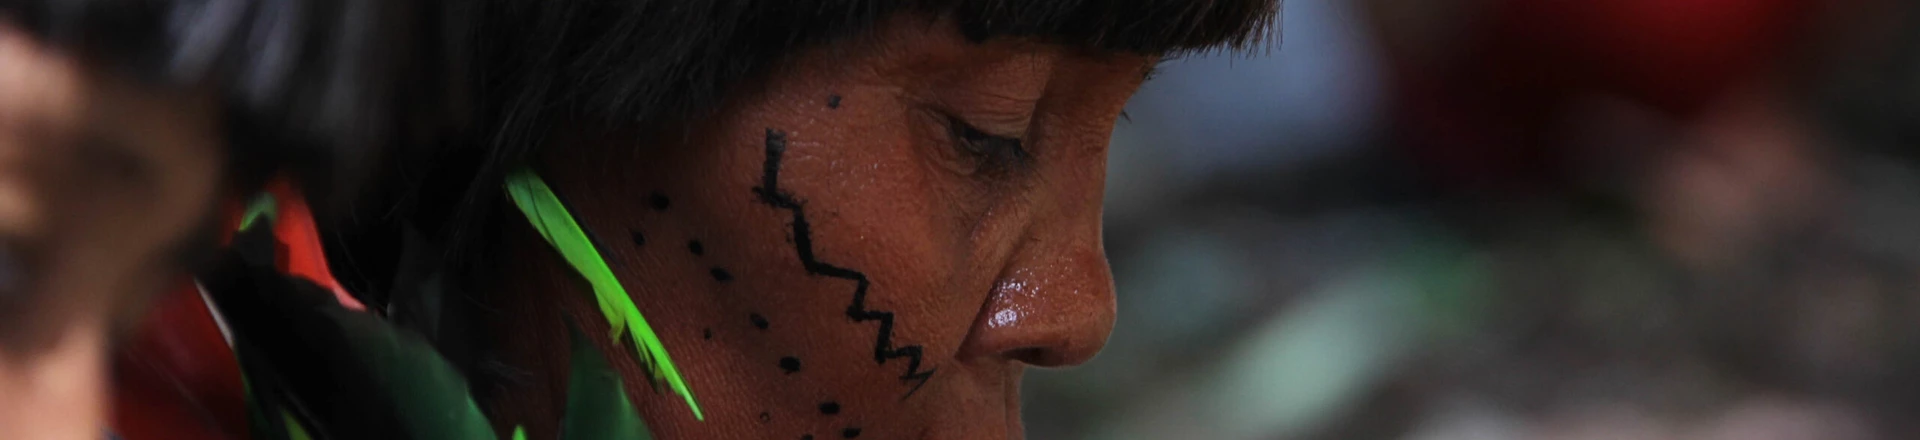 Assembleia Geral Yanomami, que celebra 20 anos de homologação da terra indígena Yanomami, na aldeia Novo Demini, em Barcelos, AM. (Barcelos, AM, 18.10.2012. Foto de Odair Leal/Folhapress)